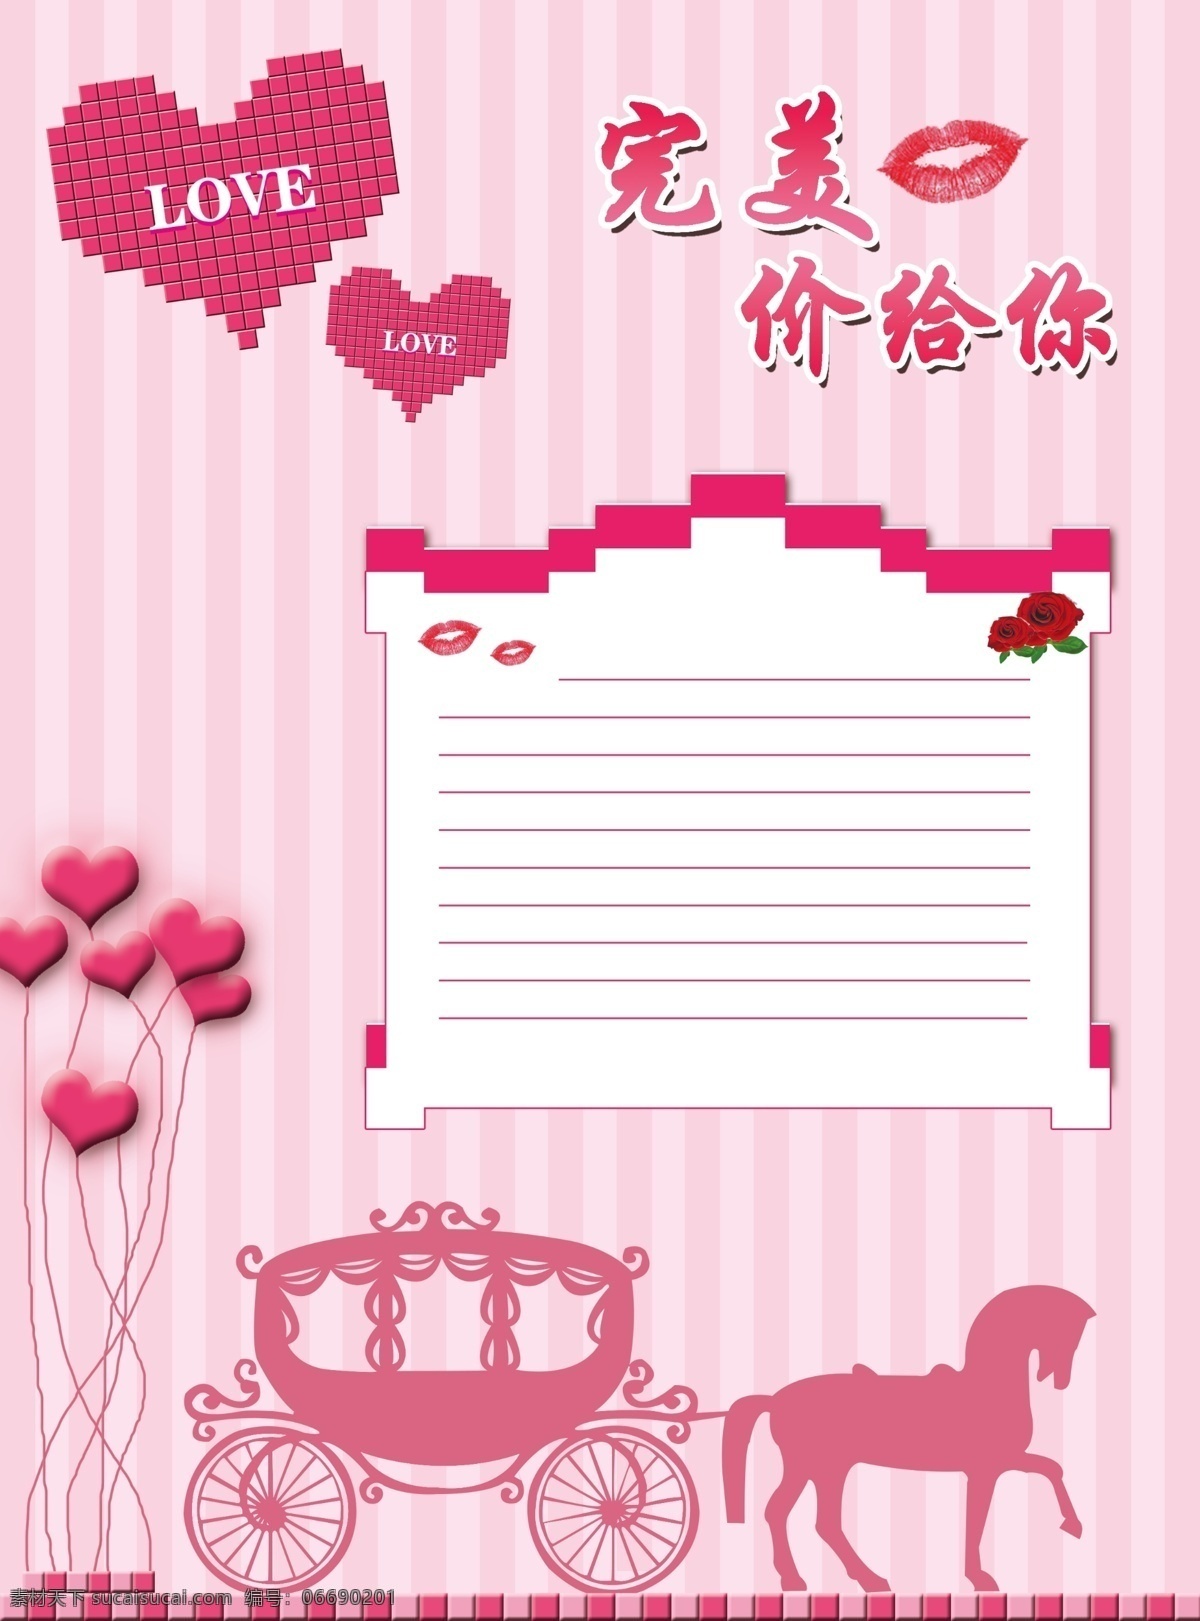 粉色主题 浪漫 梦幻 婚庆宣传单 婚礼 爱情 紫色